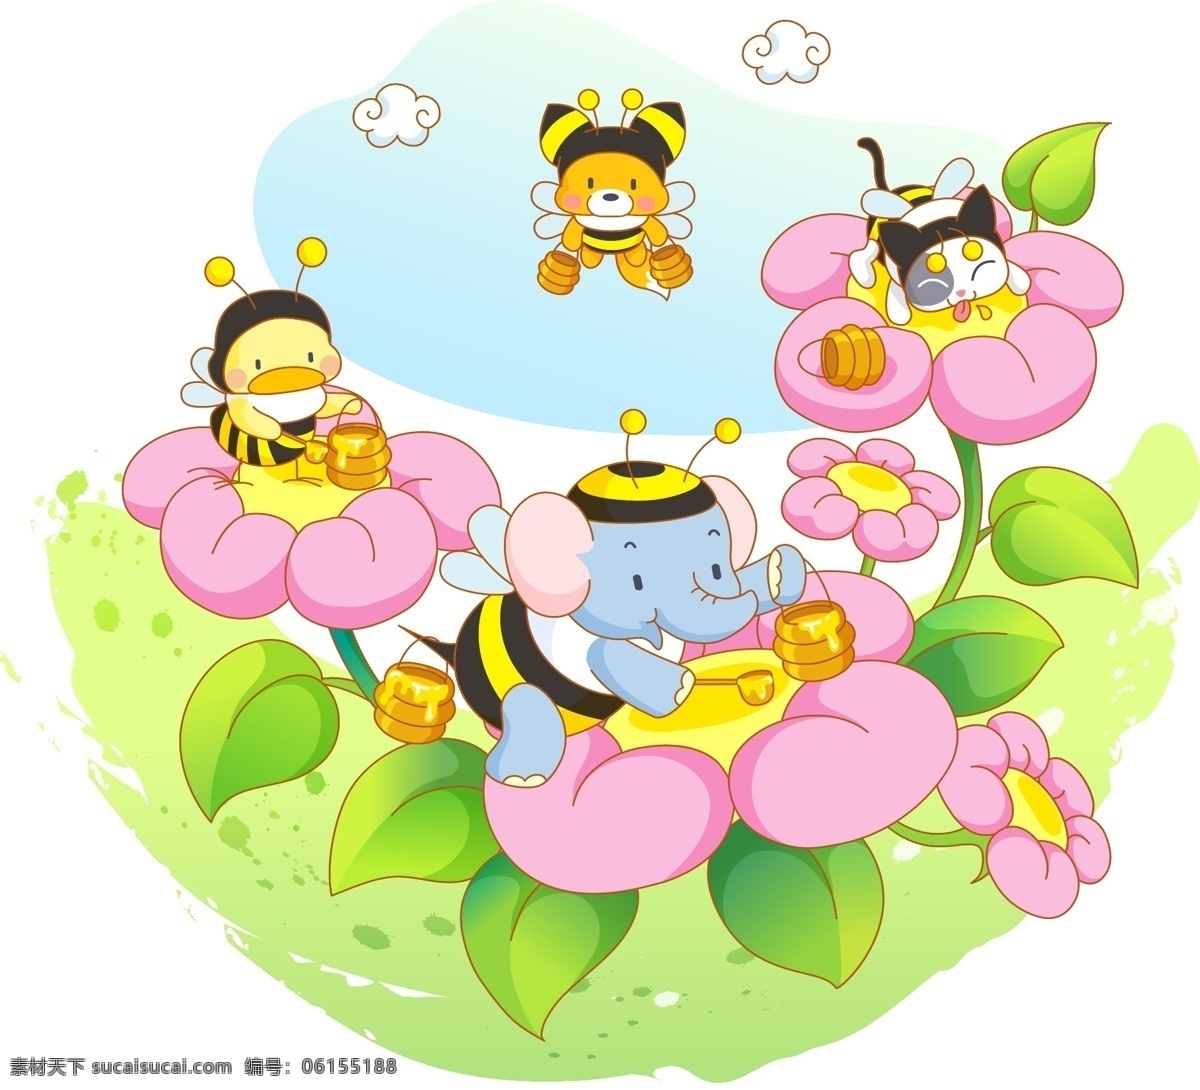 采蜜的小动物 小蜜蜂 大象 小鸡 猫咪 狐狸 采蜜 蜂蜜 花蕊 花朵 卡通 动物 可爱 童趣 插画 劳动 动画卡通矢量 动漫动画 动漫人物